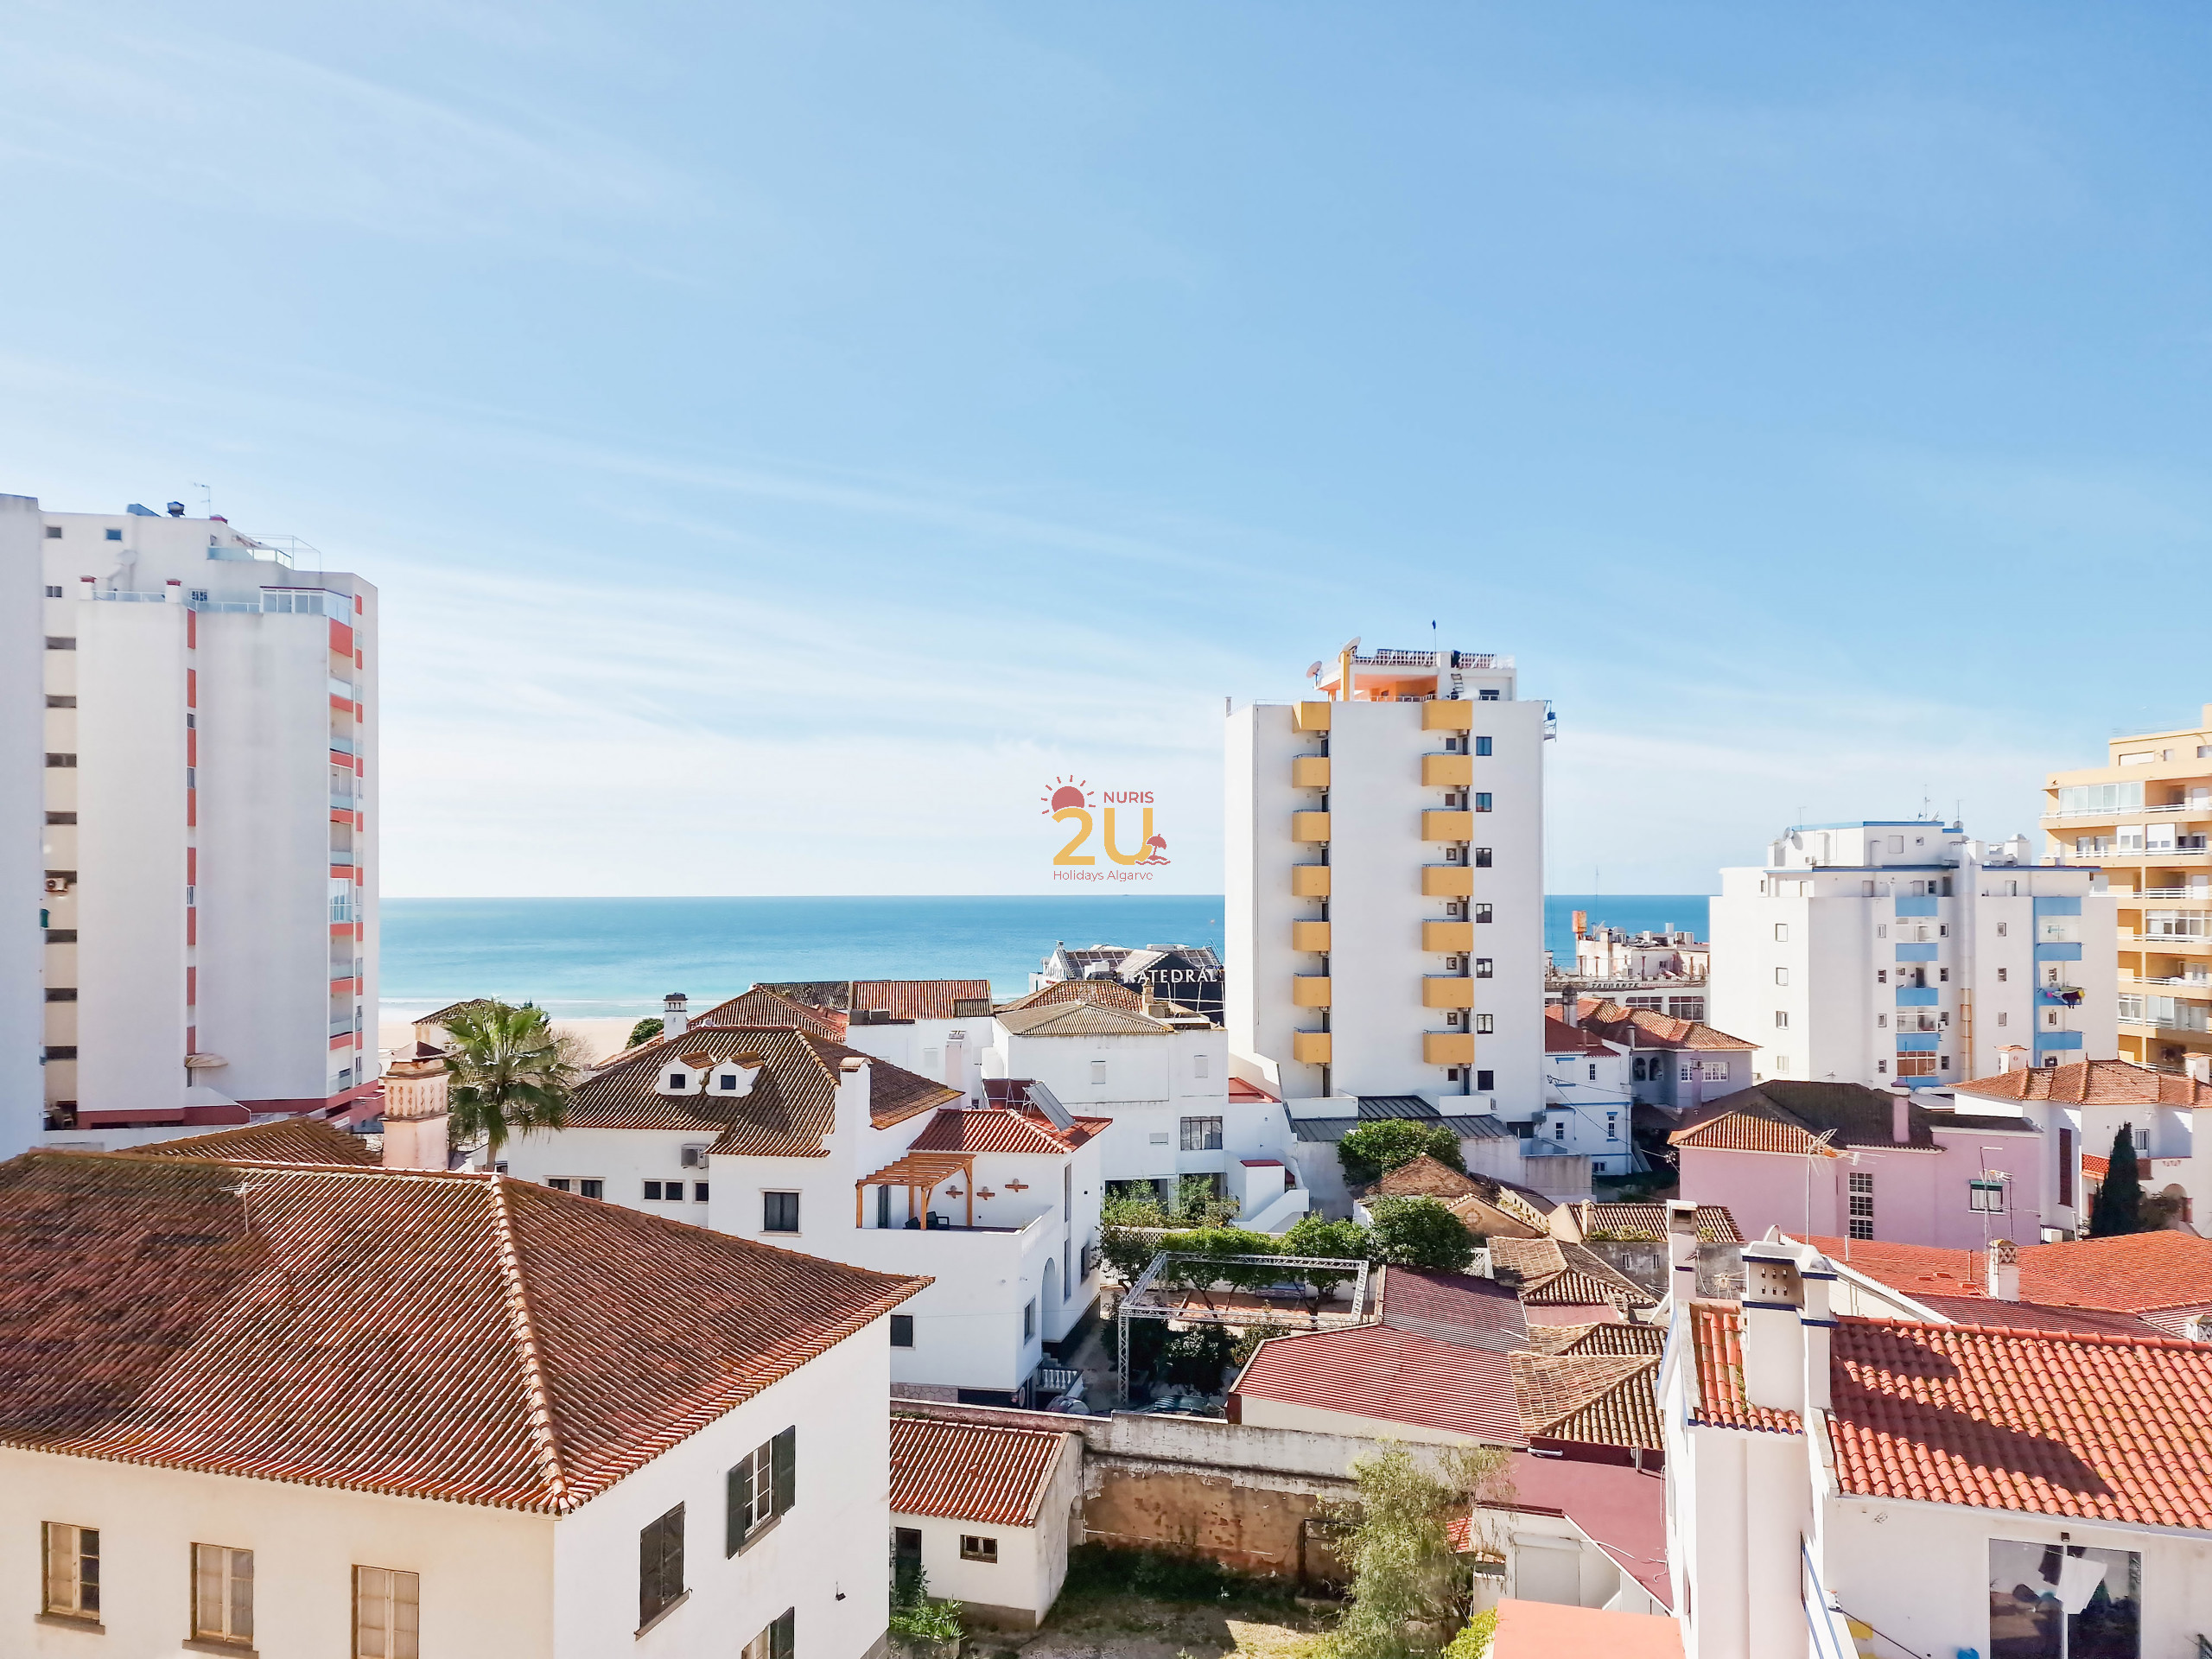  Apartamento Vista Mar Praia da Rocha Portimão Algarve